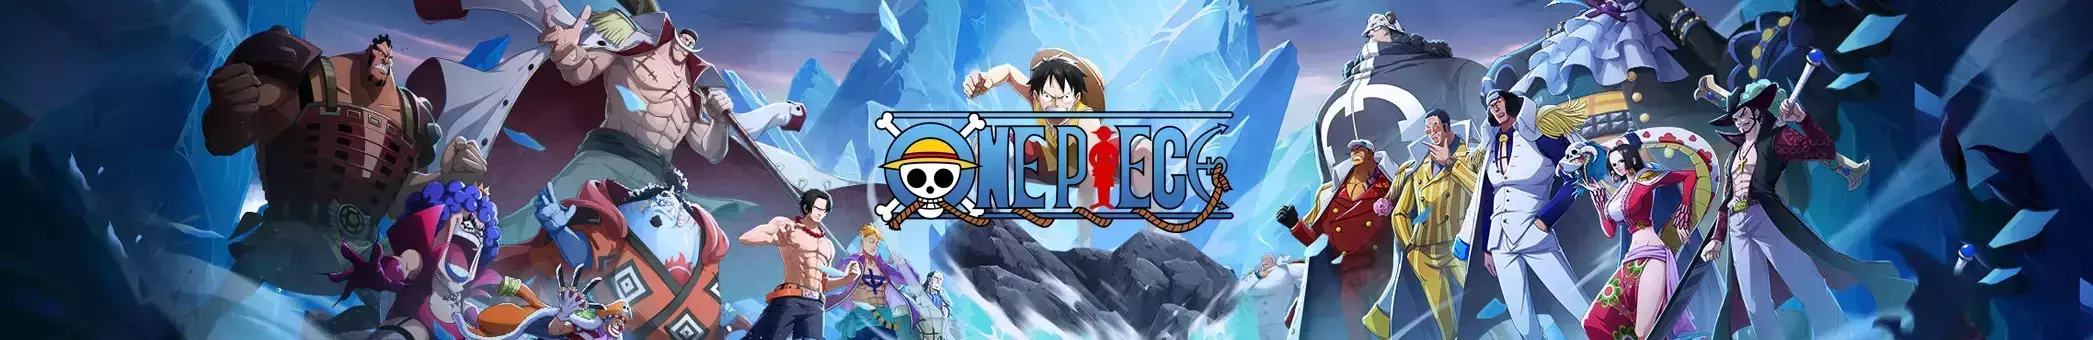 One Piece Digital Edition